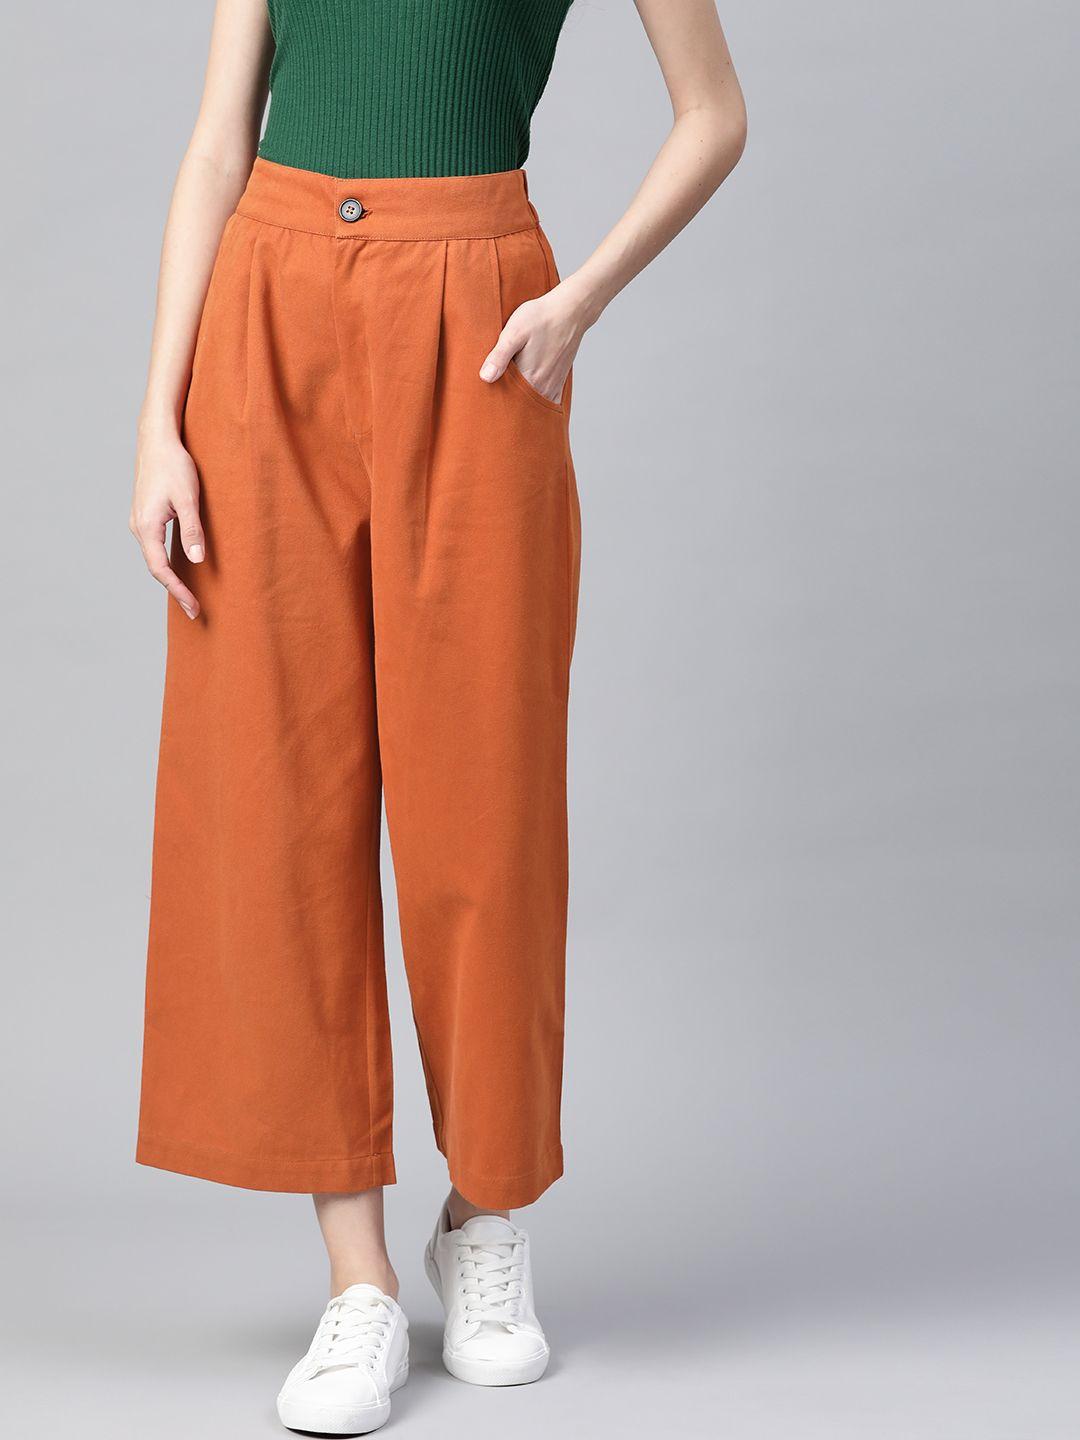 popnetic women rust parallel trousers